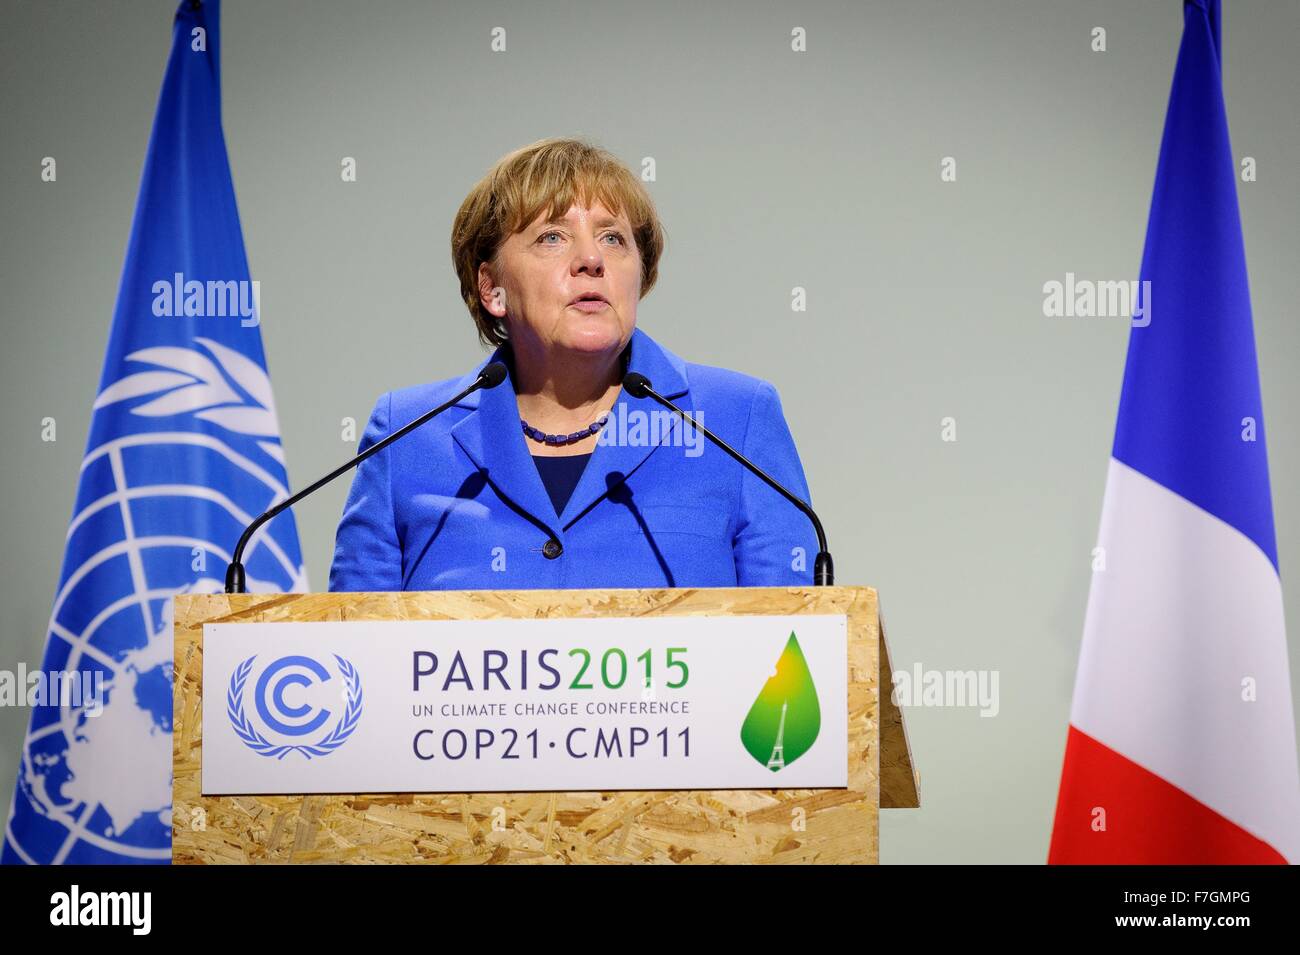 Le Bourget, France. 30 novembre, 2015. La chancelière allemande, Angela Merkel, traite de la session plénière de la COP21, Conférence des Nations Unies sur les changements climatiques 30 novembre 2015 en dehors de Paris Le Bourget, France. Banque D'Images